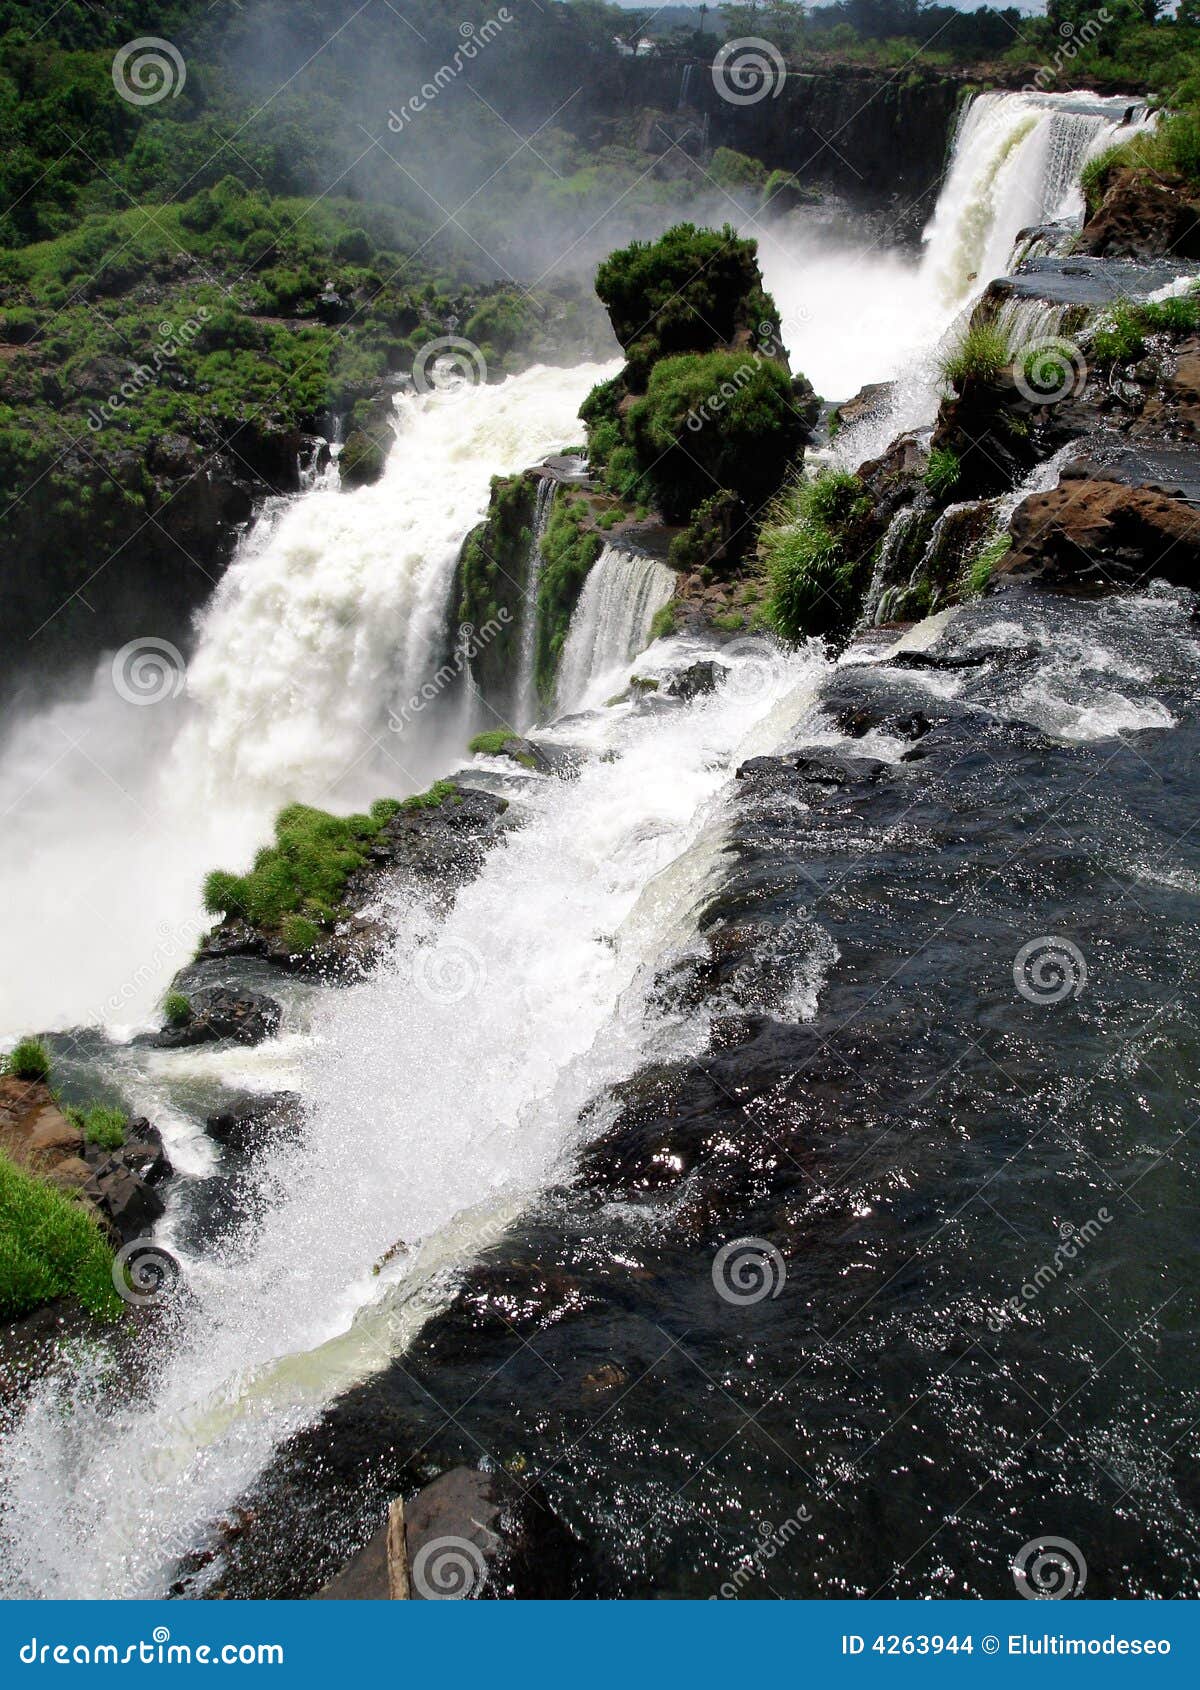 iguazu waterfalls2